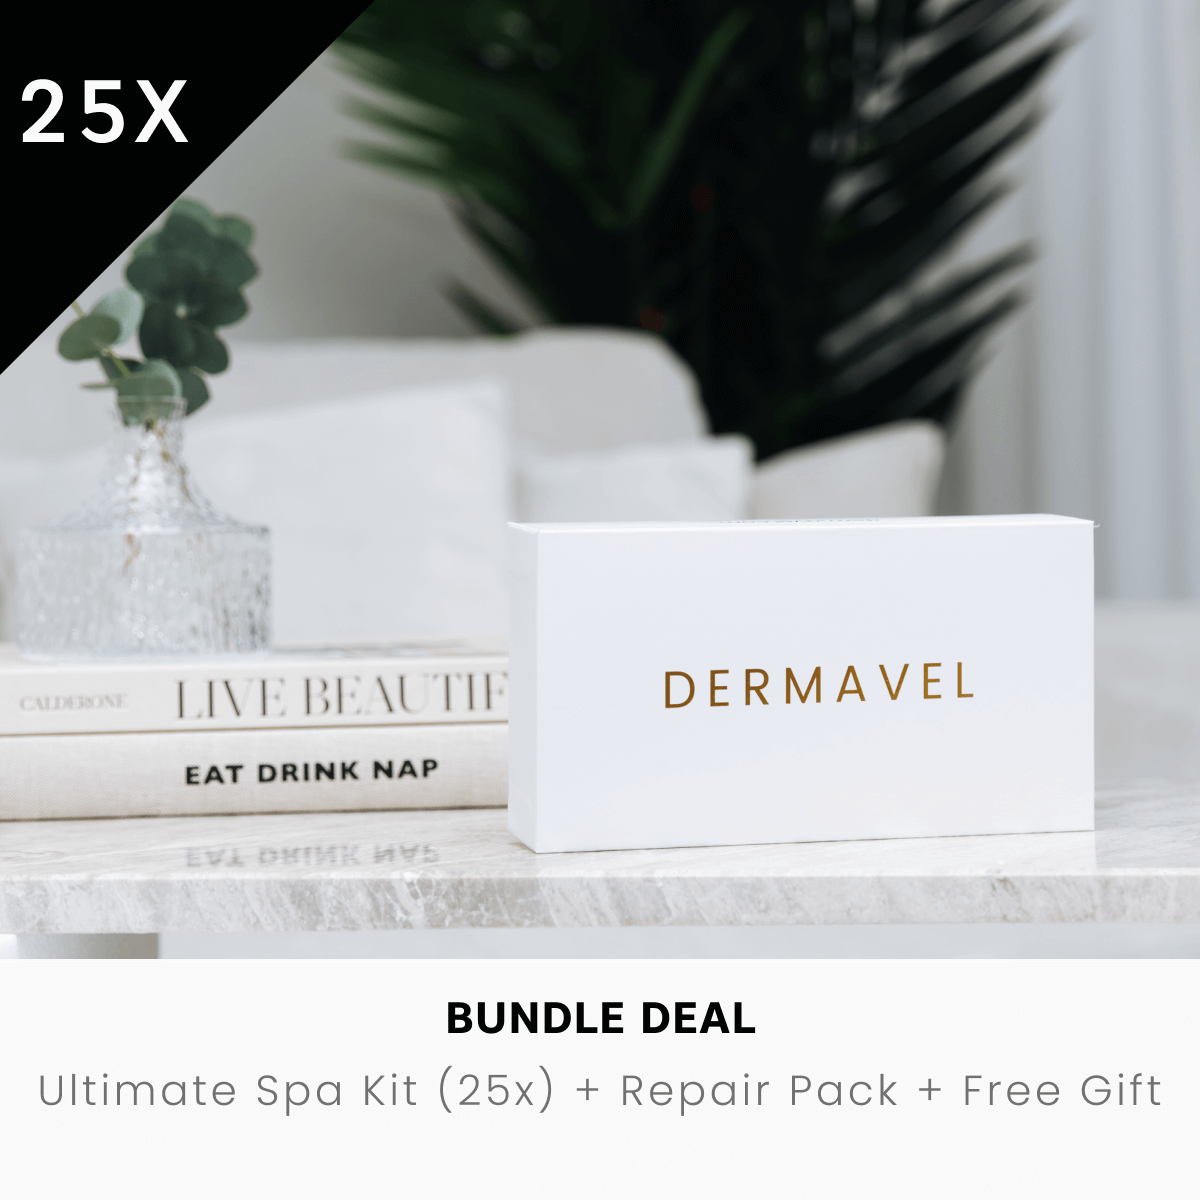 Bundle Deal: Ultimate Beauty Spa Kit (25x) + Repair Pack (2040 pcs) + Free Guidebook